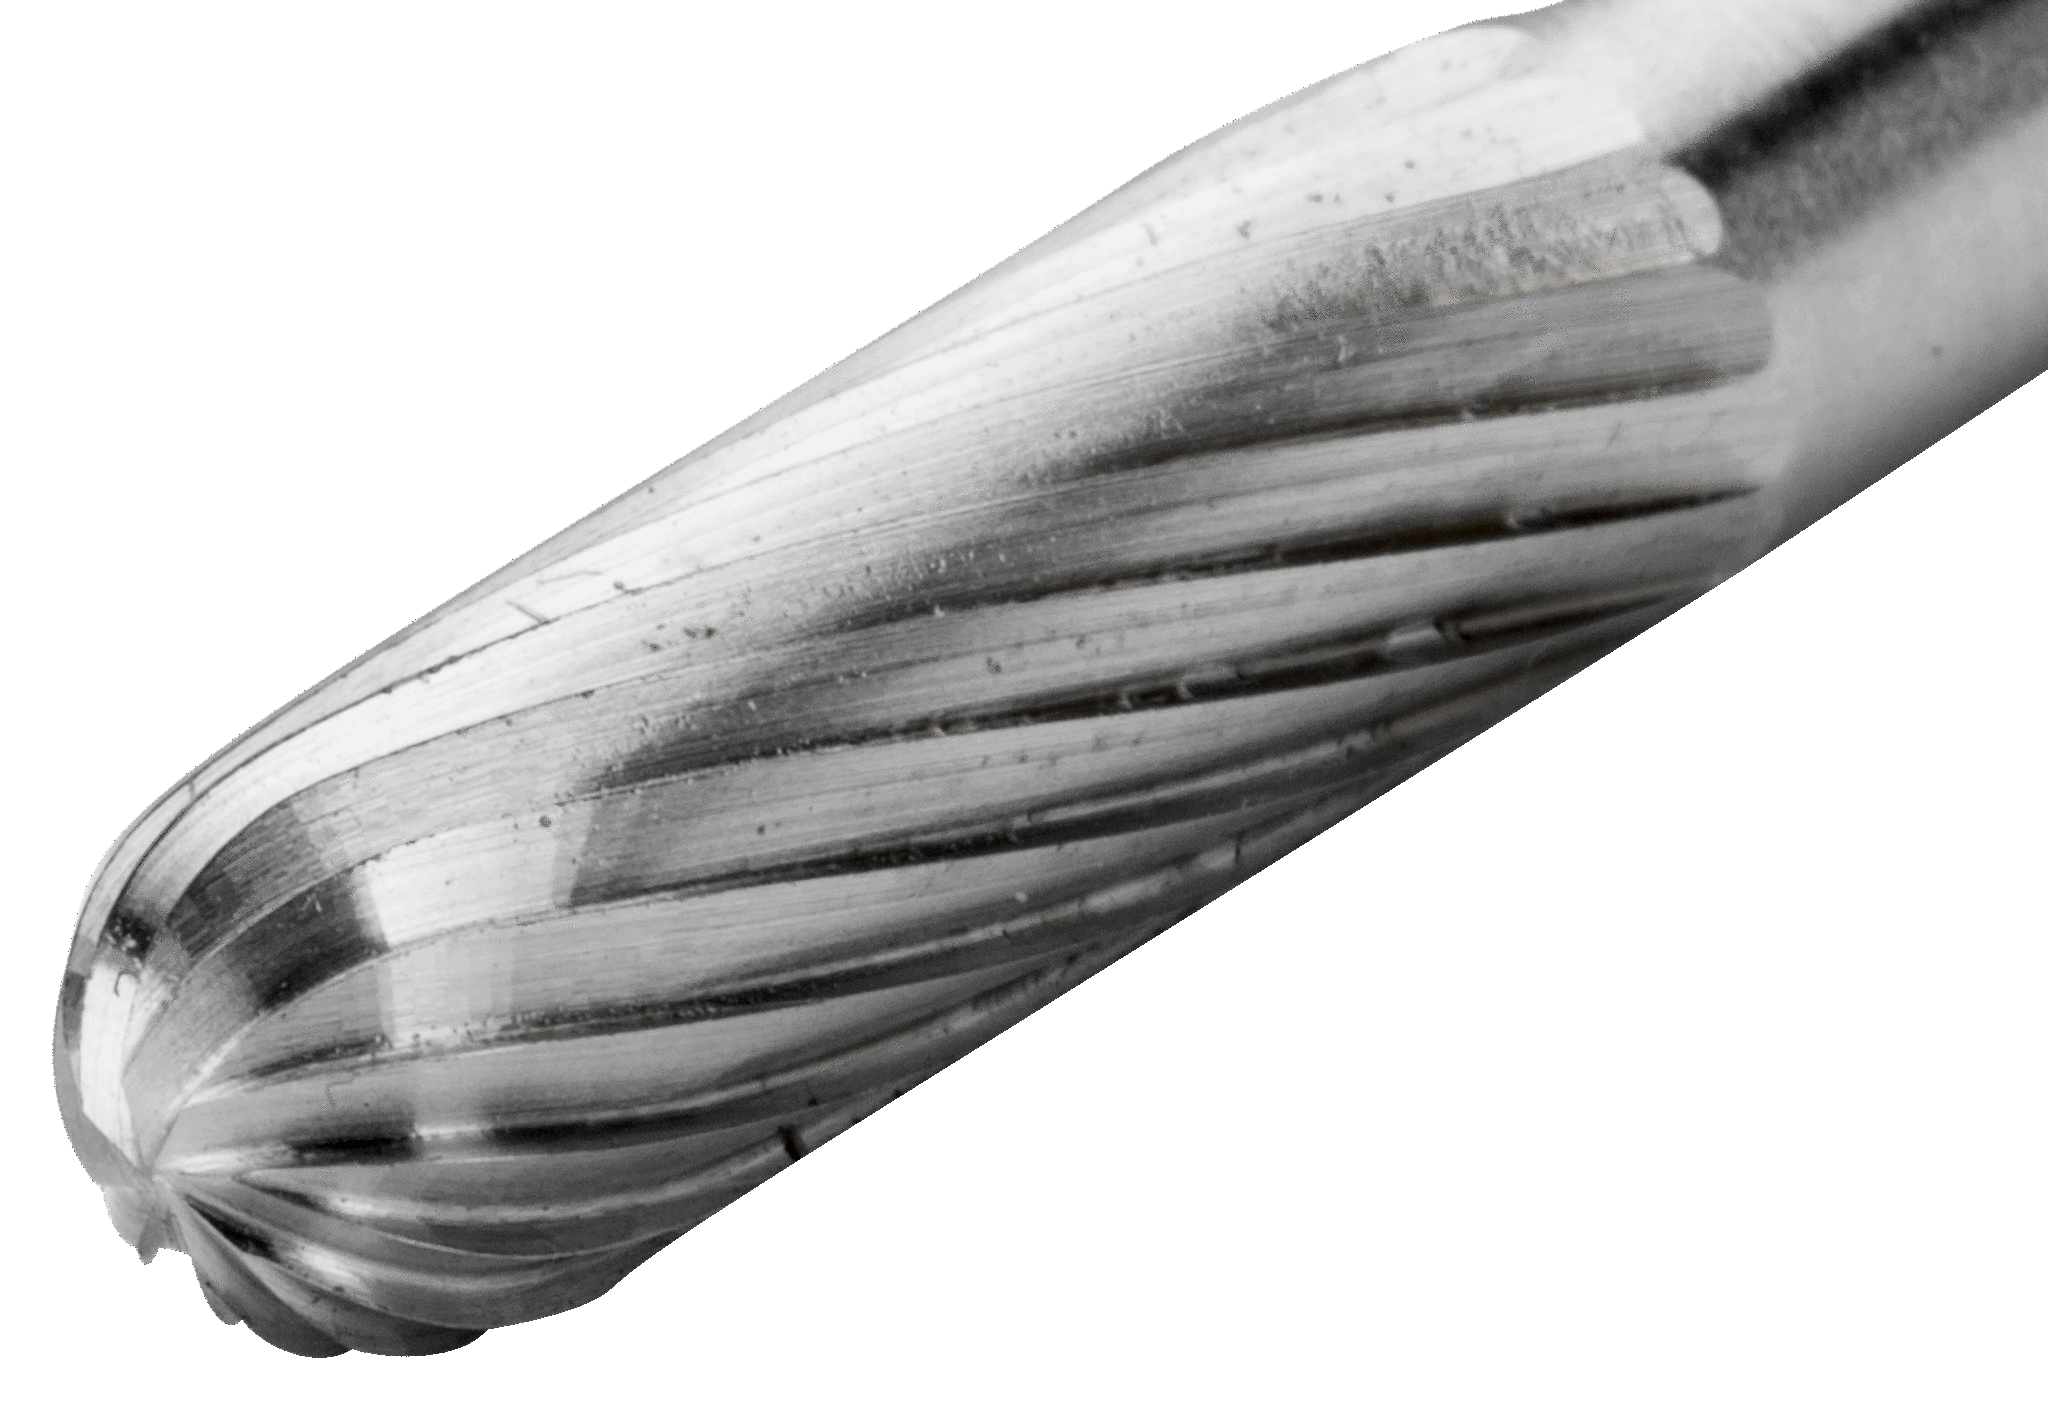 картинка Борфрезы из быстрорежущей стали с цилиндрической скругленной головкой BAHCO HSSG-C1225M от магазина "Элит-инструмент"